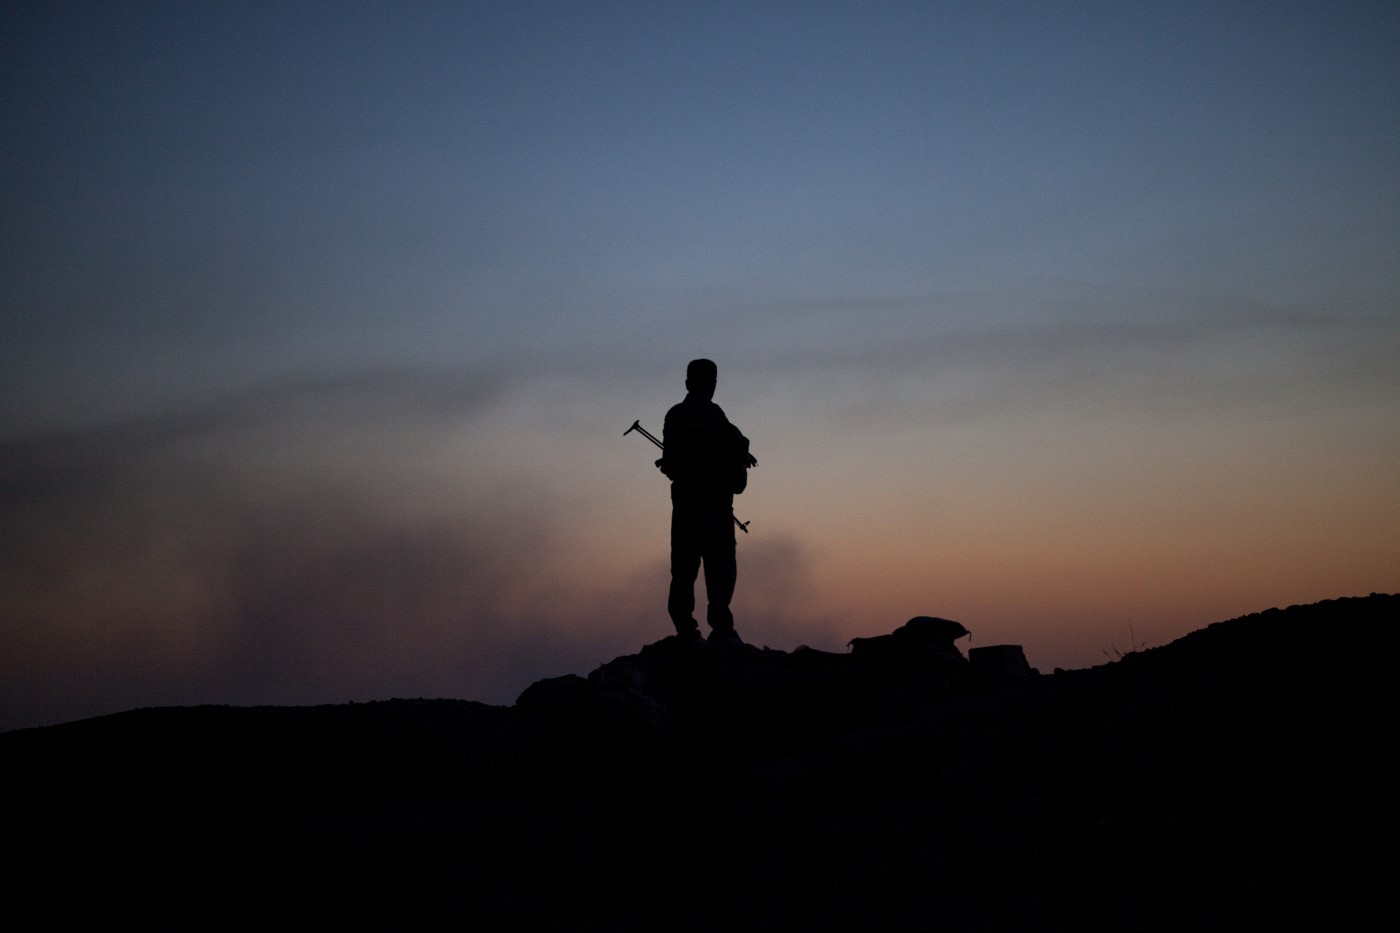 Un Peshmerga controla un posible ataque del Estado Islámico en uno de los puntos estratégicos de la línea de Tuz Khurmatu. Al fondo, a la luz del crepúsculo, el humo refleja la actividad de los miembros del Estado Islámico. Tuz Khurmatu; Kurdistán, Irak. 19 de junio de 2017